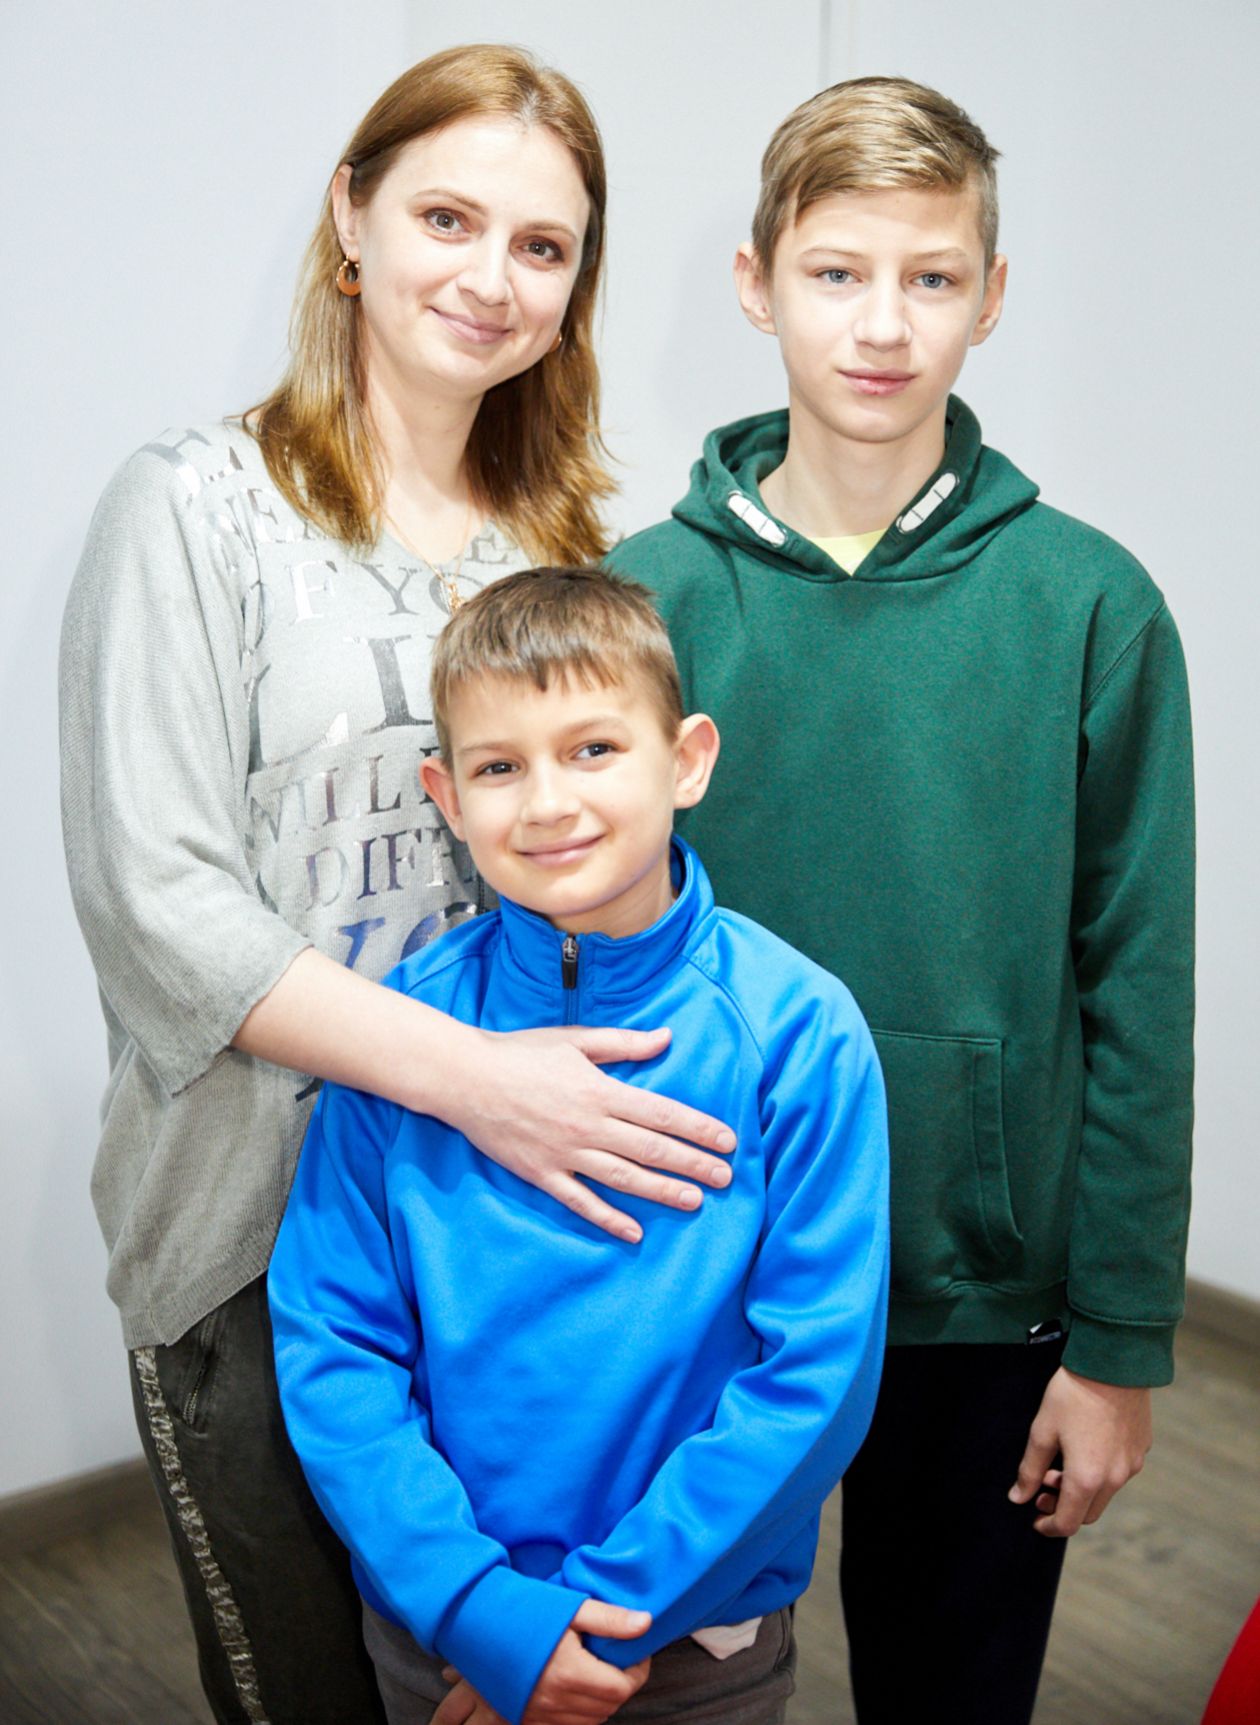 Tetiana Mukhina con sus hijos Matvey y Nikita, que tiene un tumor cerebral y está siendo tratado en el Hospital Gregorio Marañón de Madrid.